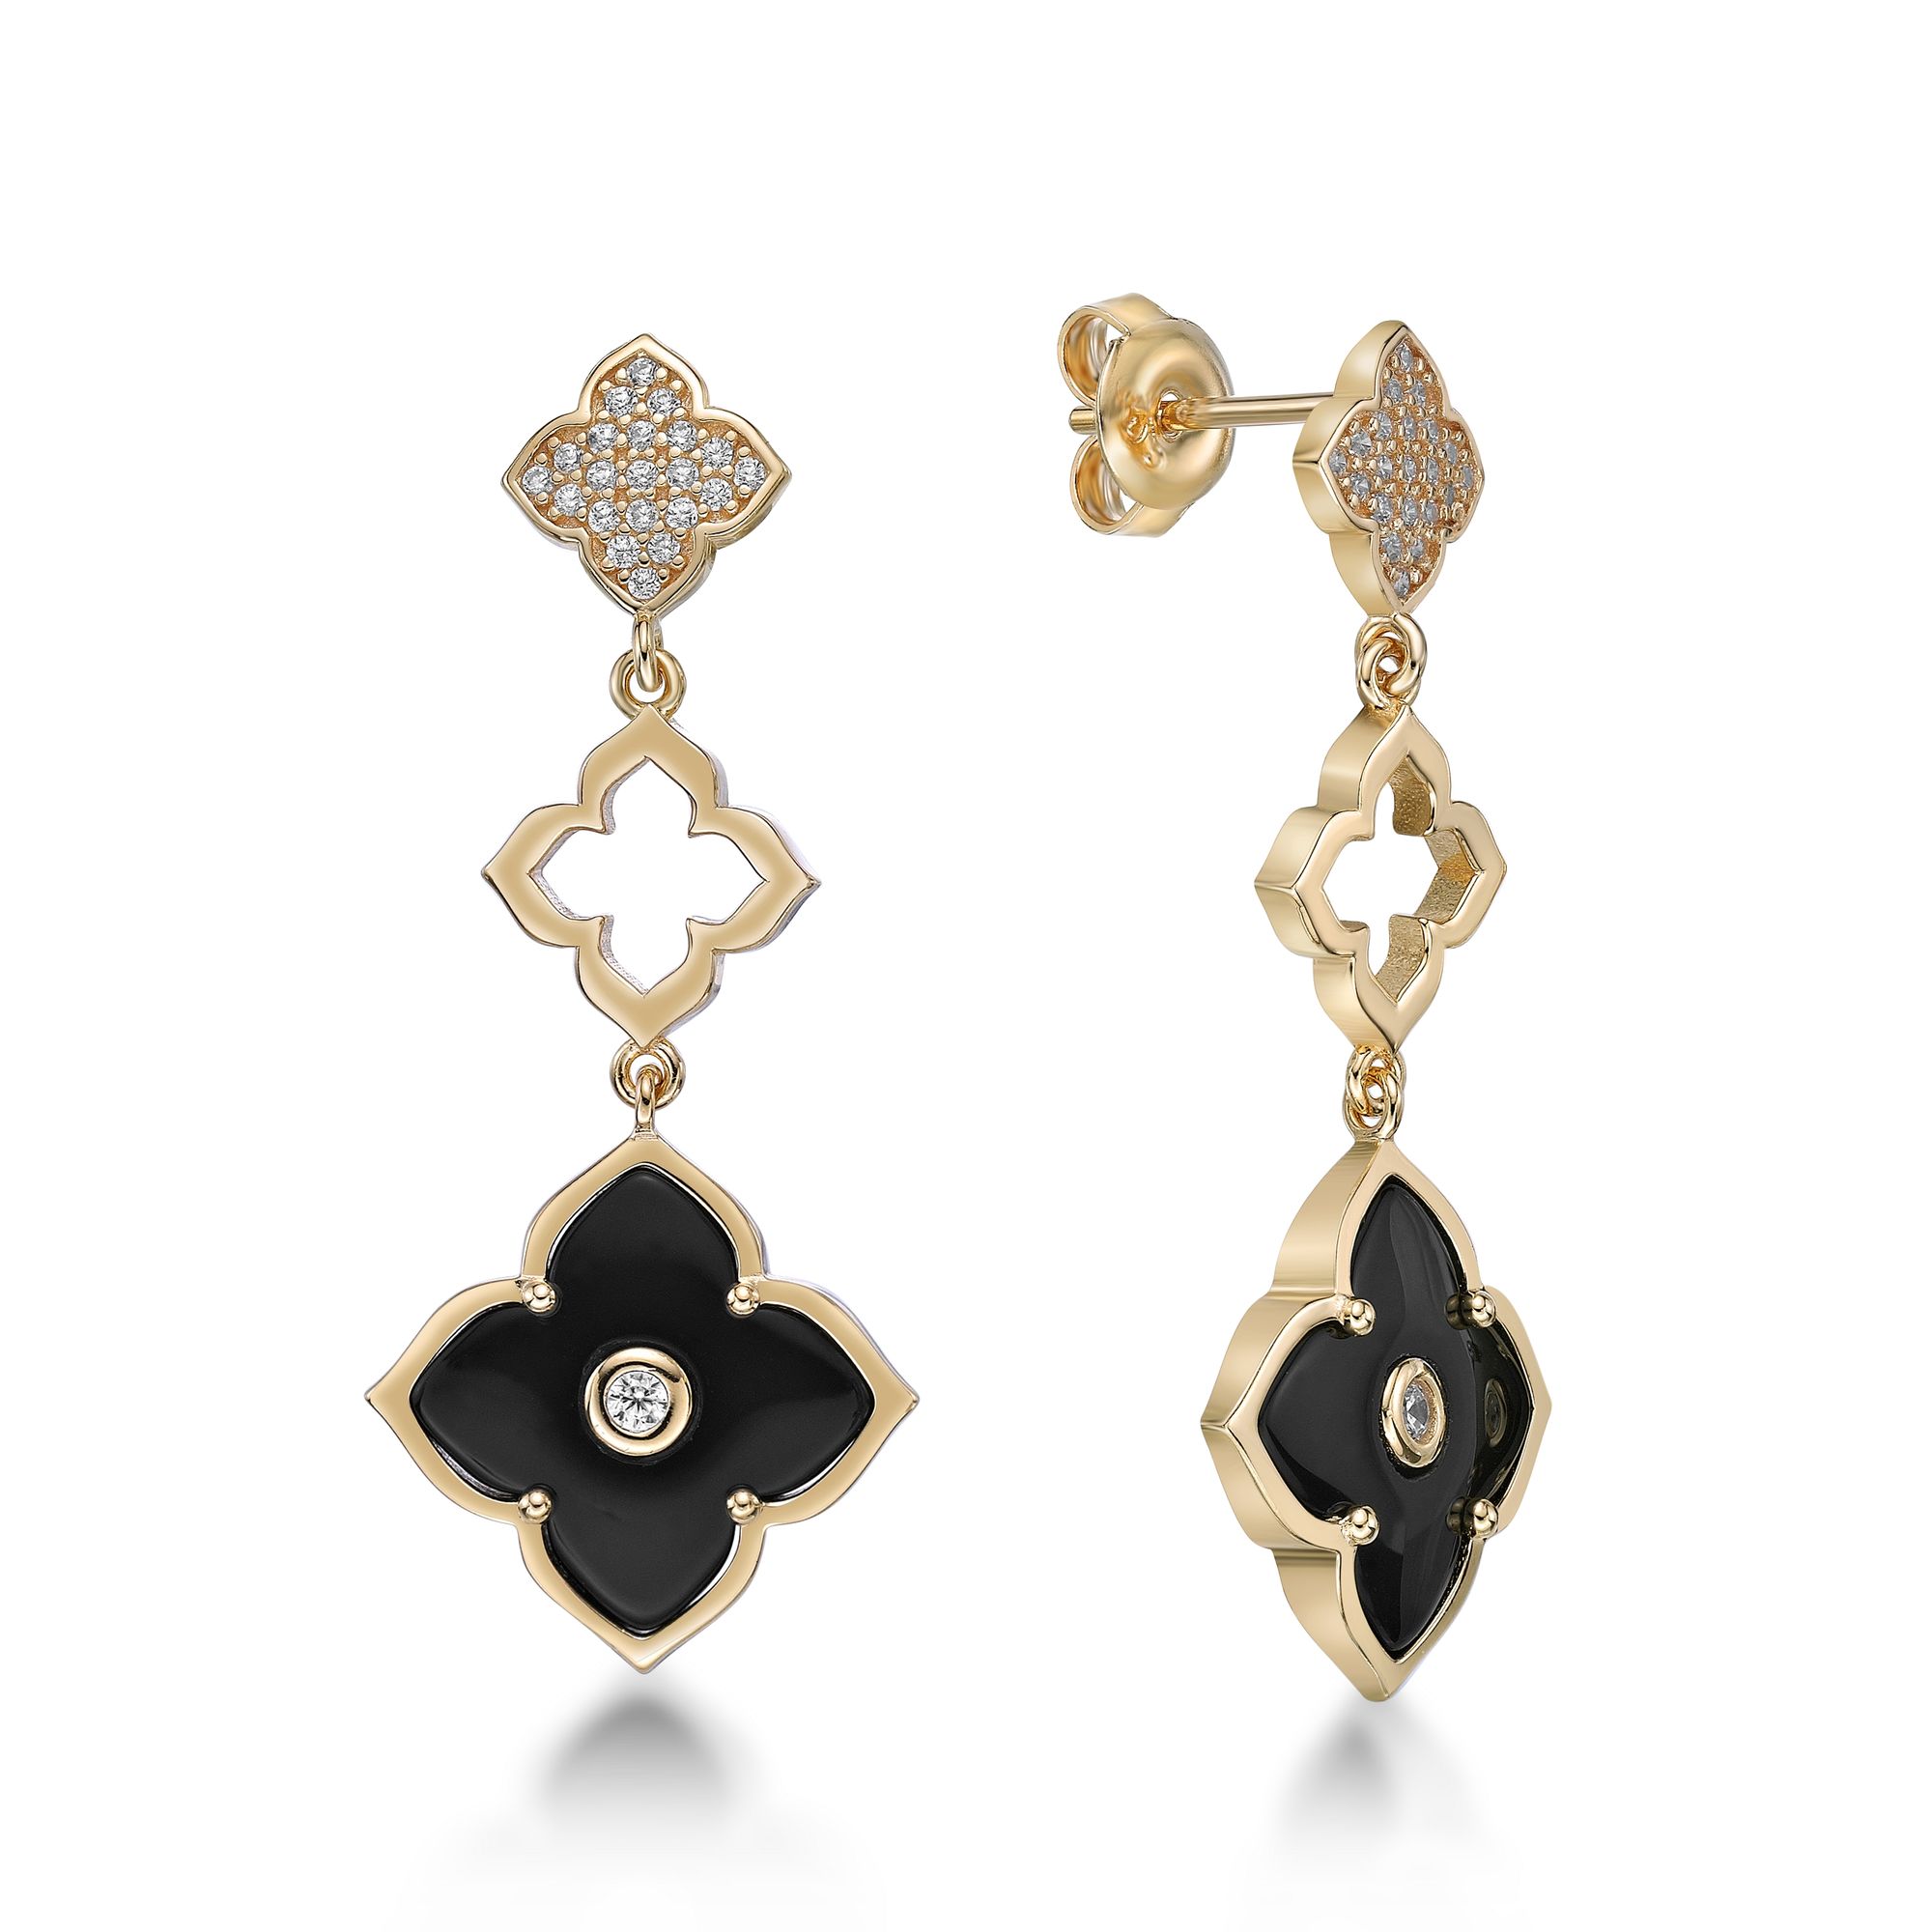 51507-earrings-fashion-jewelry-sterling-silver-51507-2.jpg